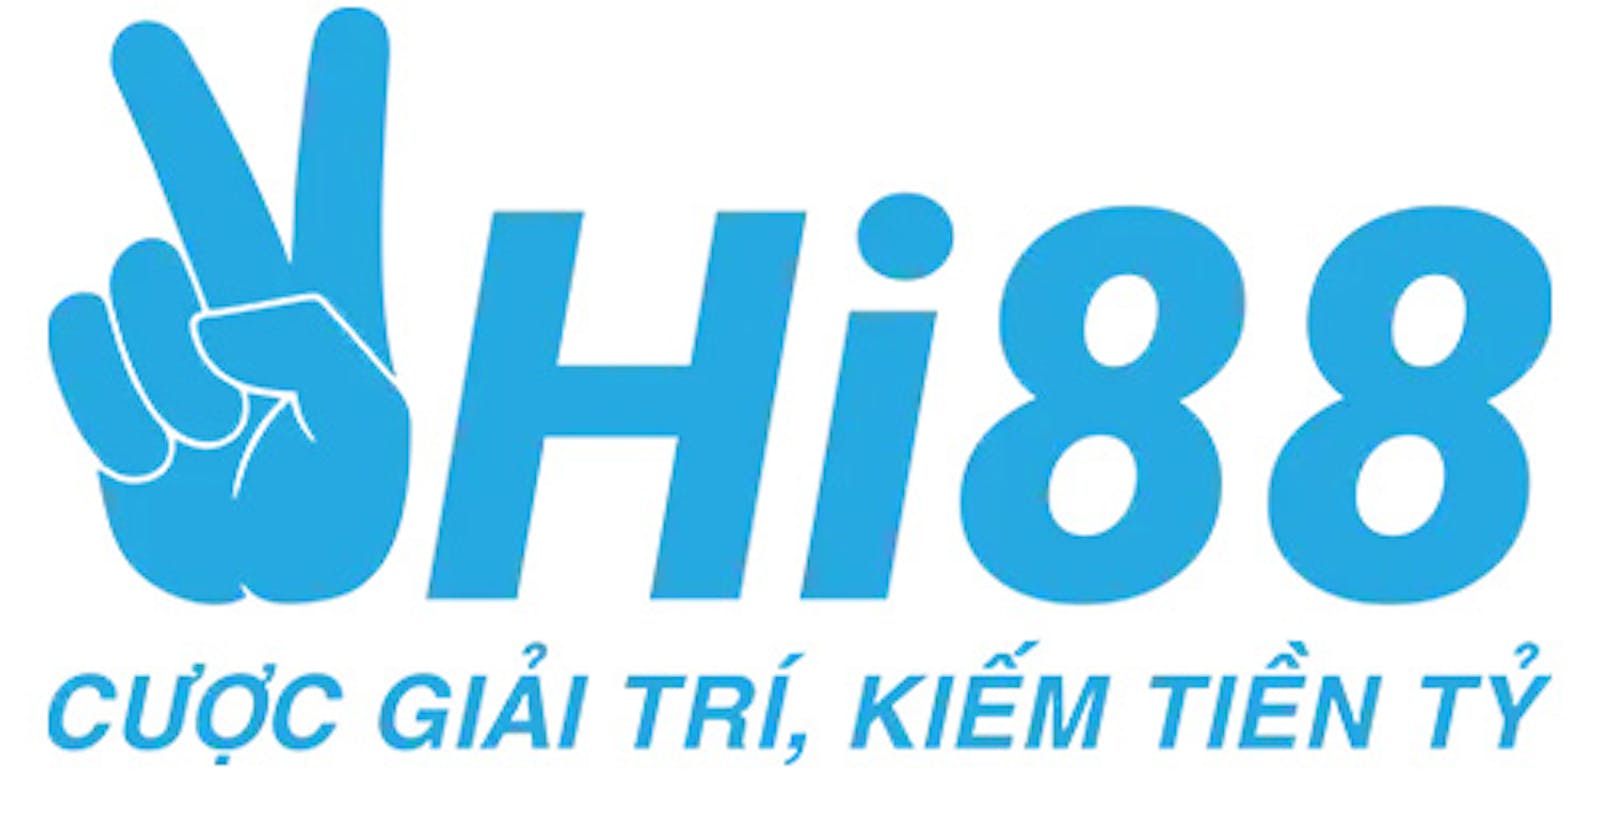 Hi88 - Nhà cái cá cược trực tuyến uy tín